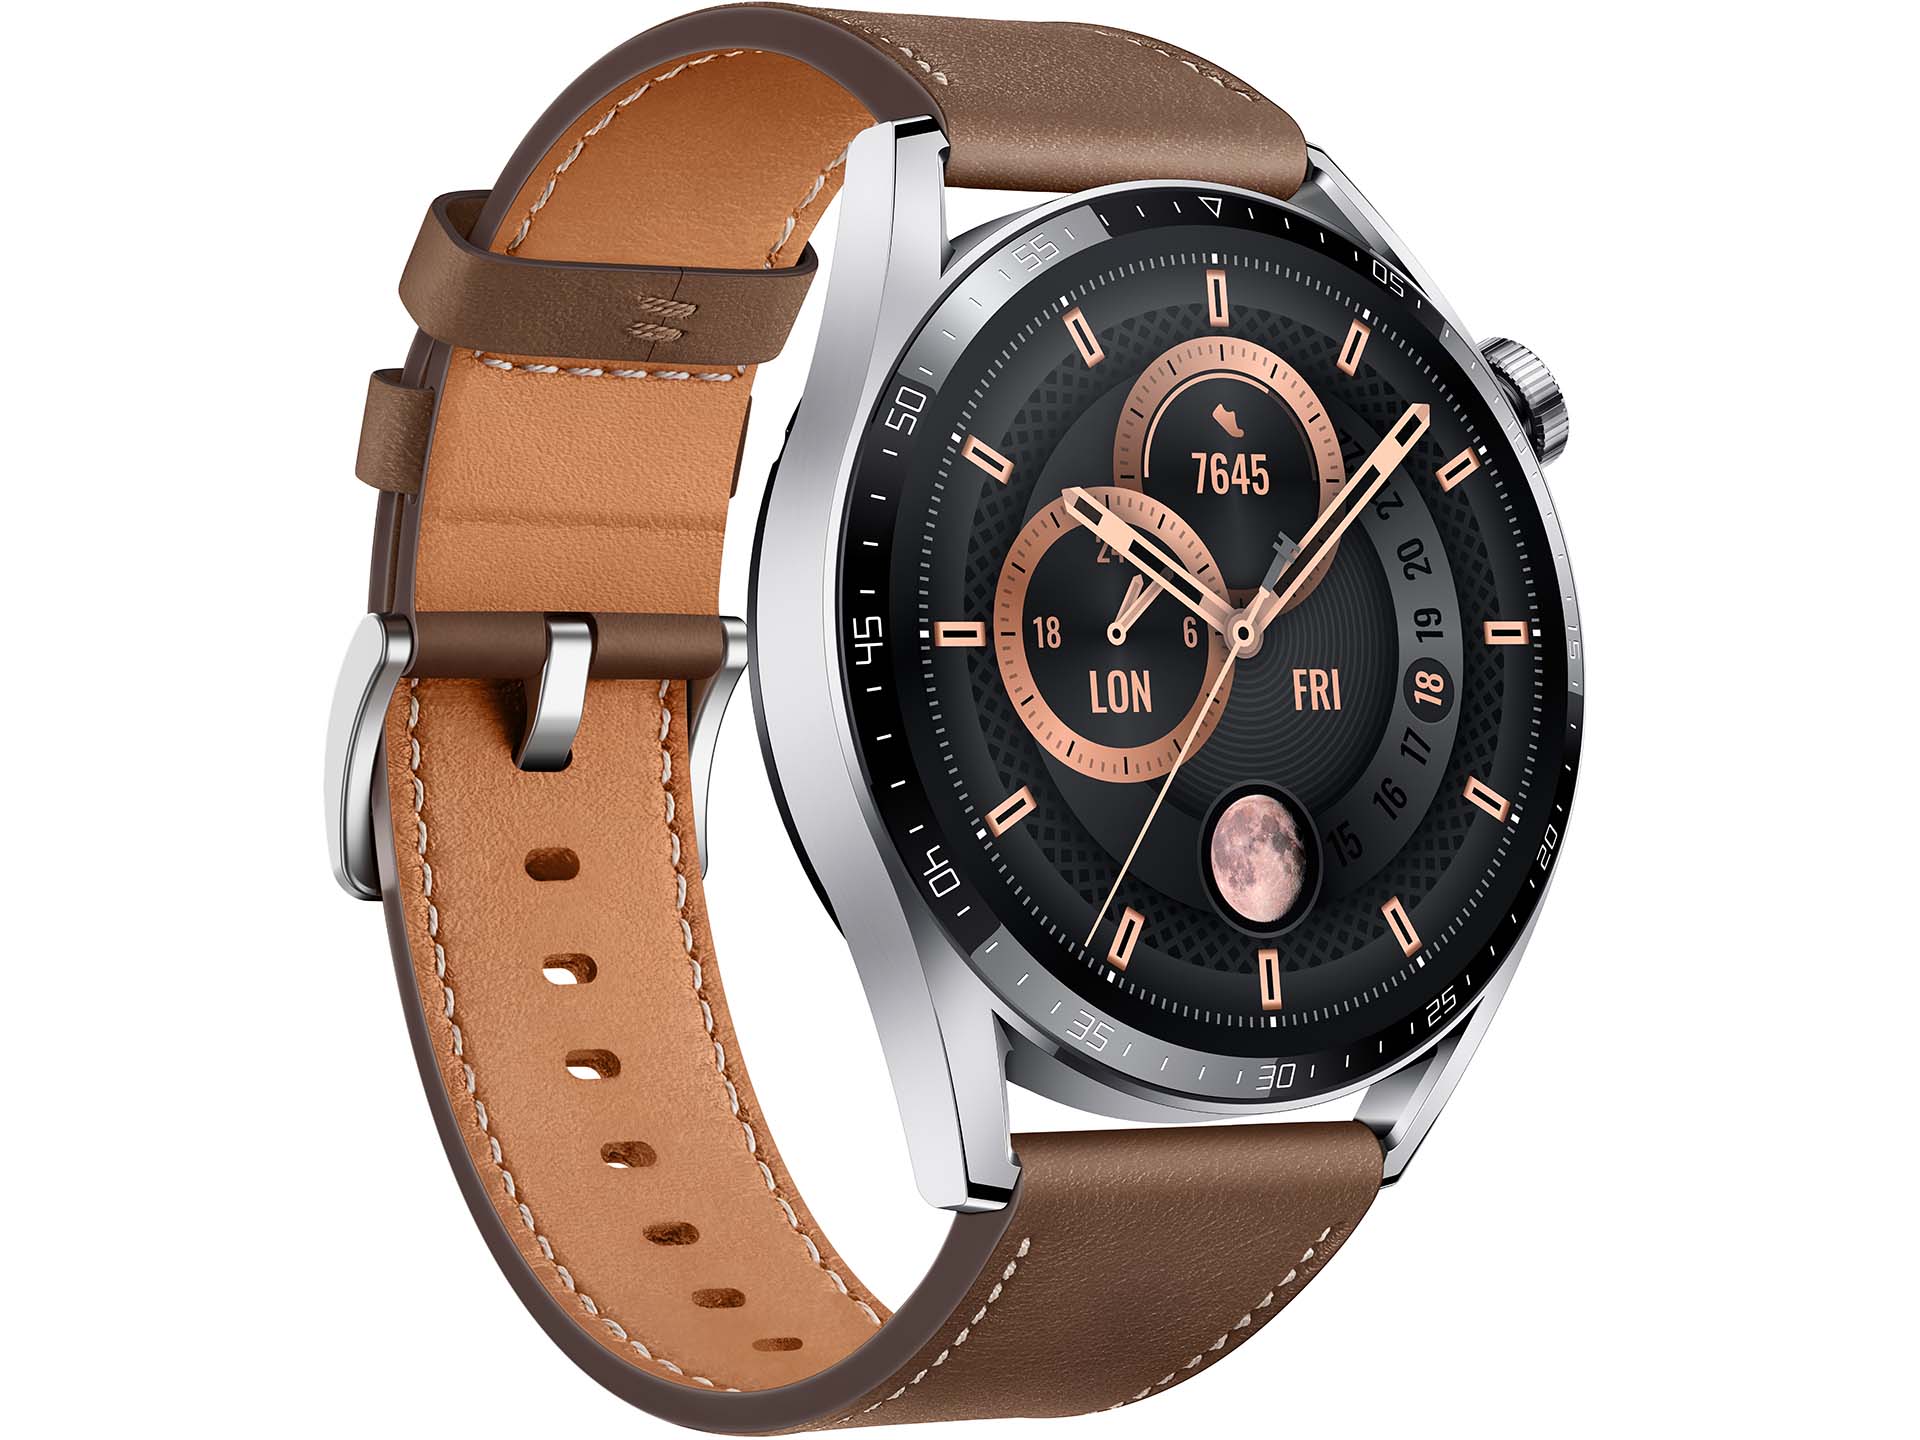 Test: Smartwatch 3 beeindruckender und Huawei Tests - GT Notebookcheck.com Watch Optik Akku Edle im